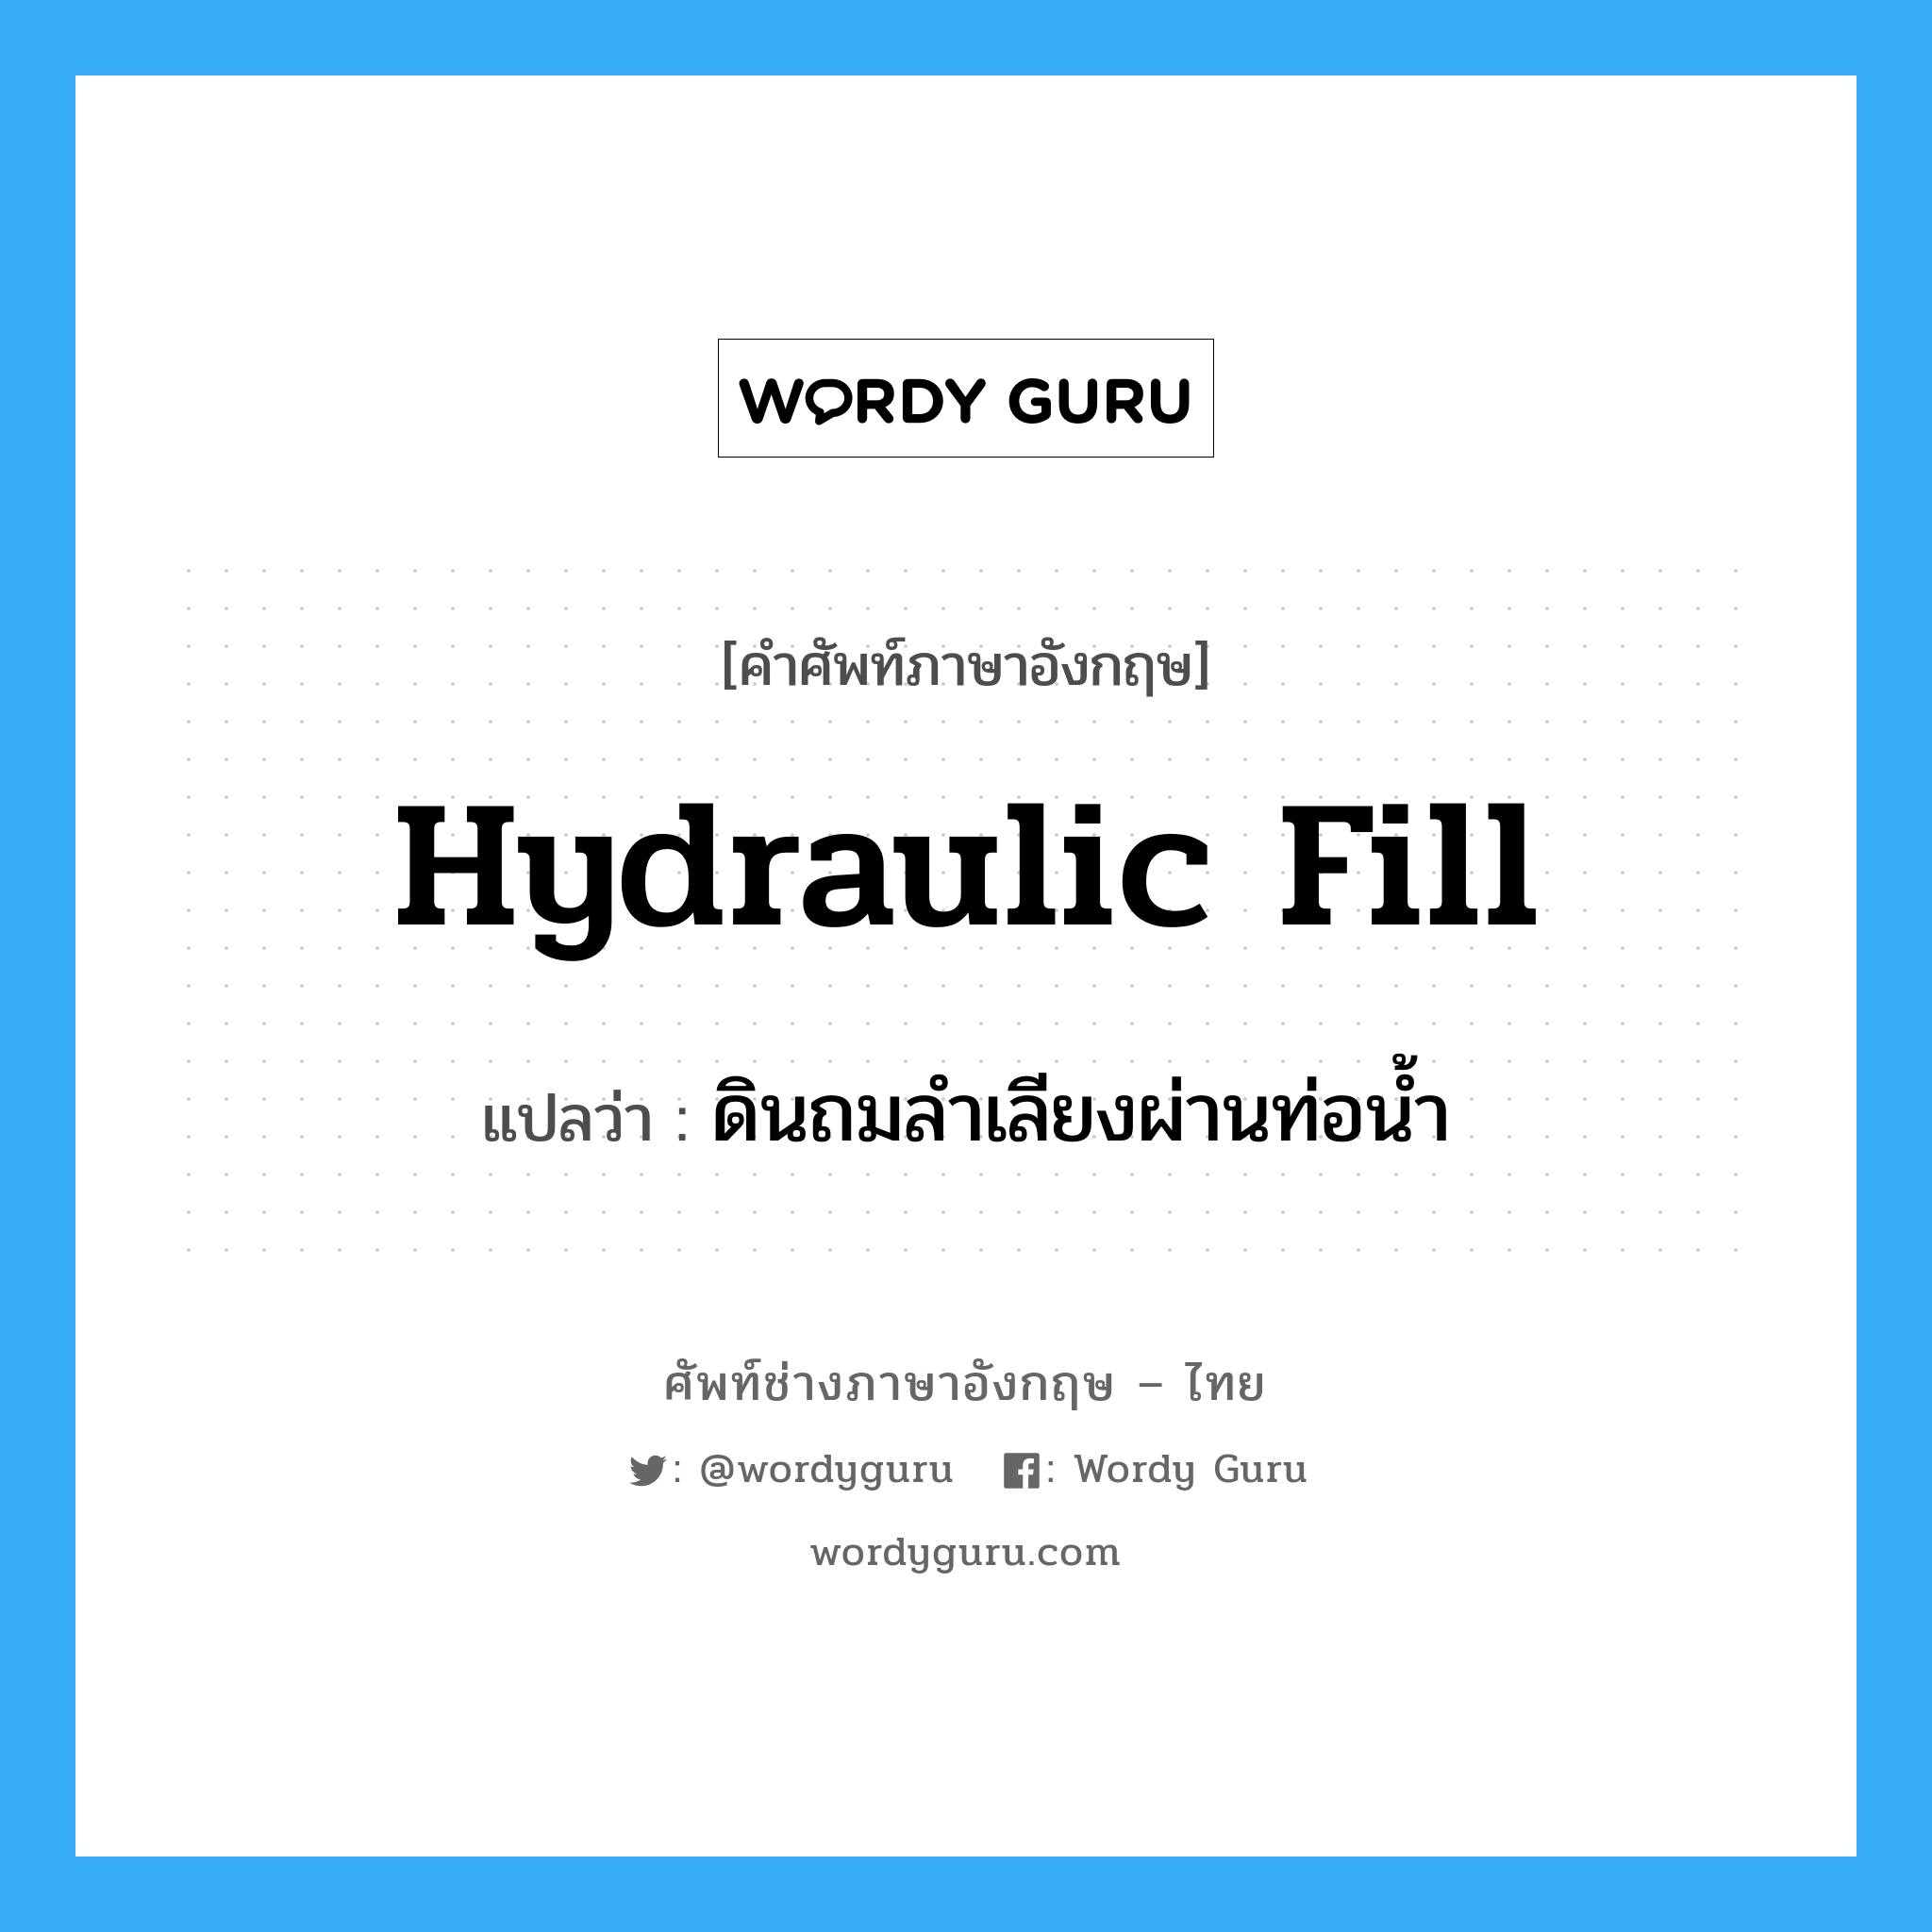 hydraulic fill แปลว่า?, คำศัพท์ช่างภาษาอังกฤษ - ไทย hydraulic fill คำศัพท์ภาษาอังกฤษ hydraulic fill แปลว่า ดินถมลำเลียงผ่านท่อน้ำ